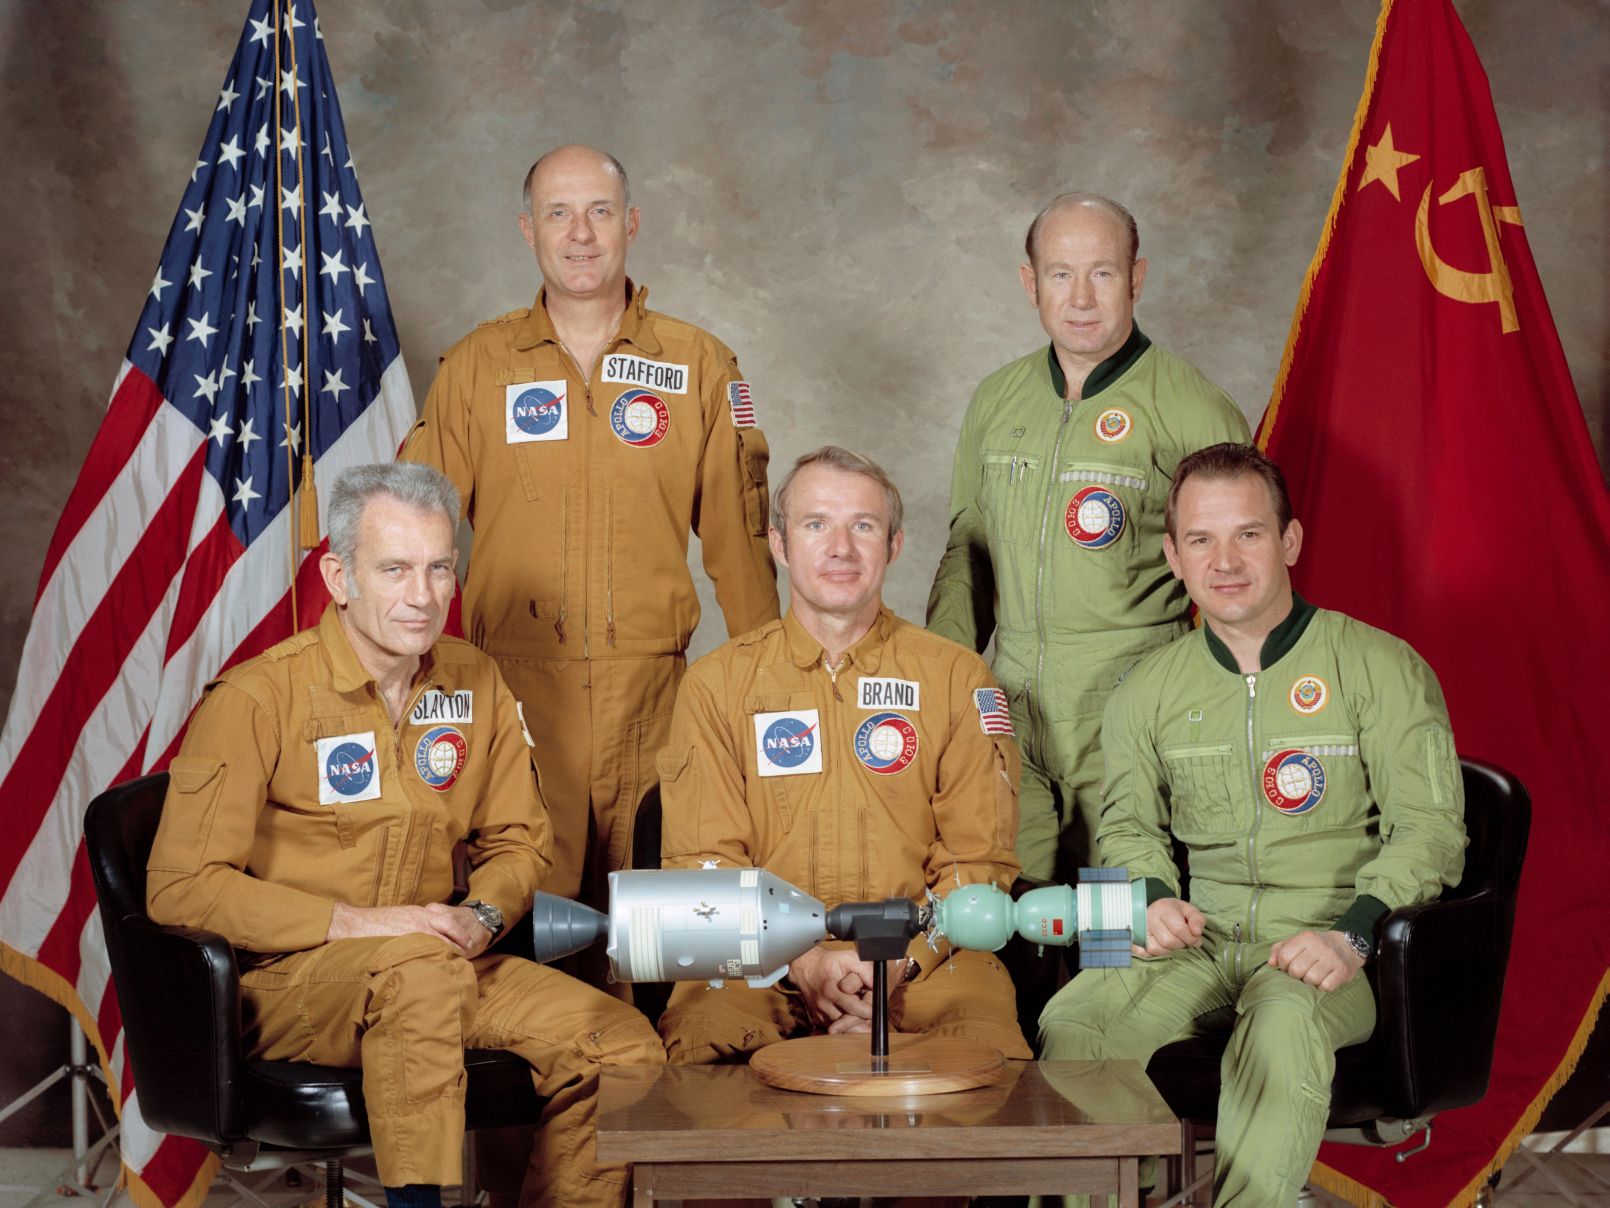 Életre szóló barátság az űrhajósok között, több évtizedes együttműködés a két űrügynökség között, a hidegháború legkeményebb éveiben is